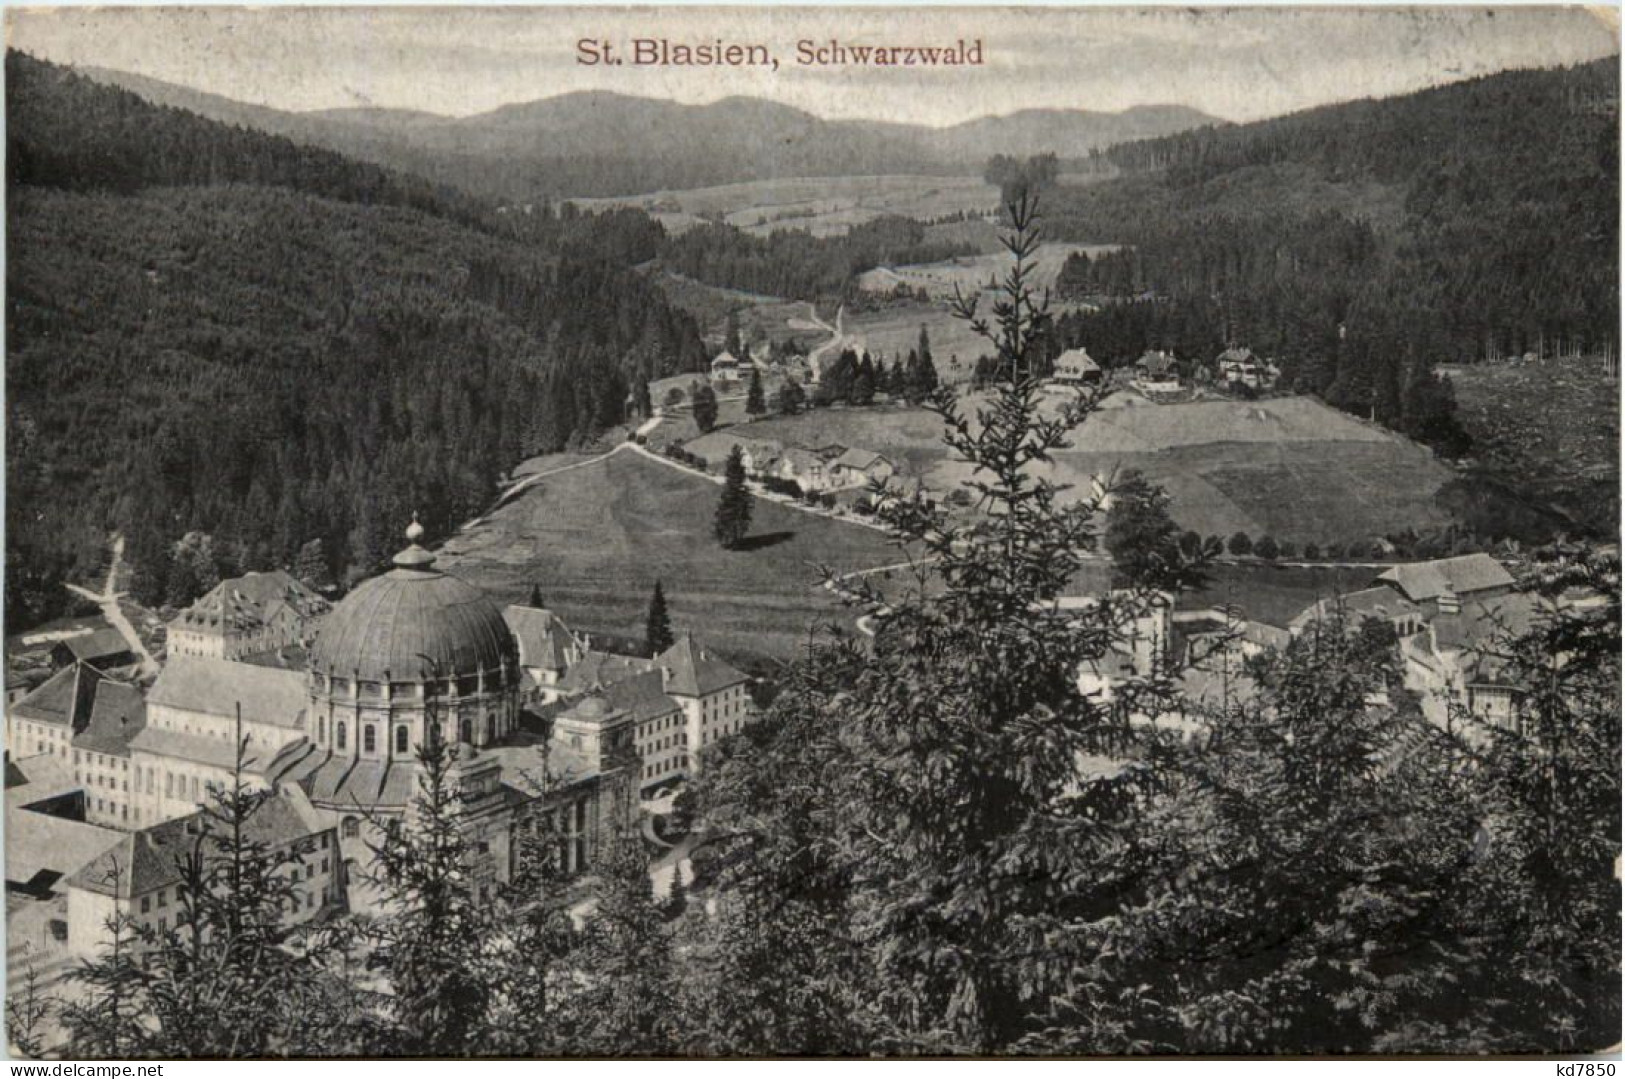 St. Blasien - St. Blasien